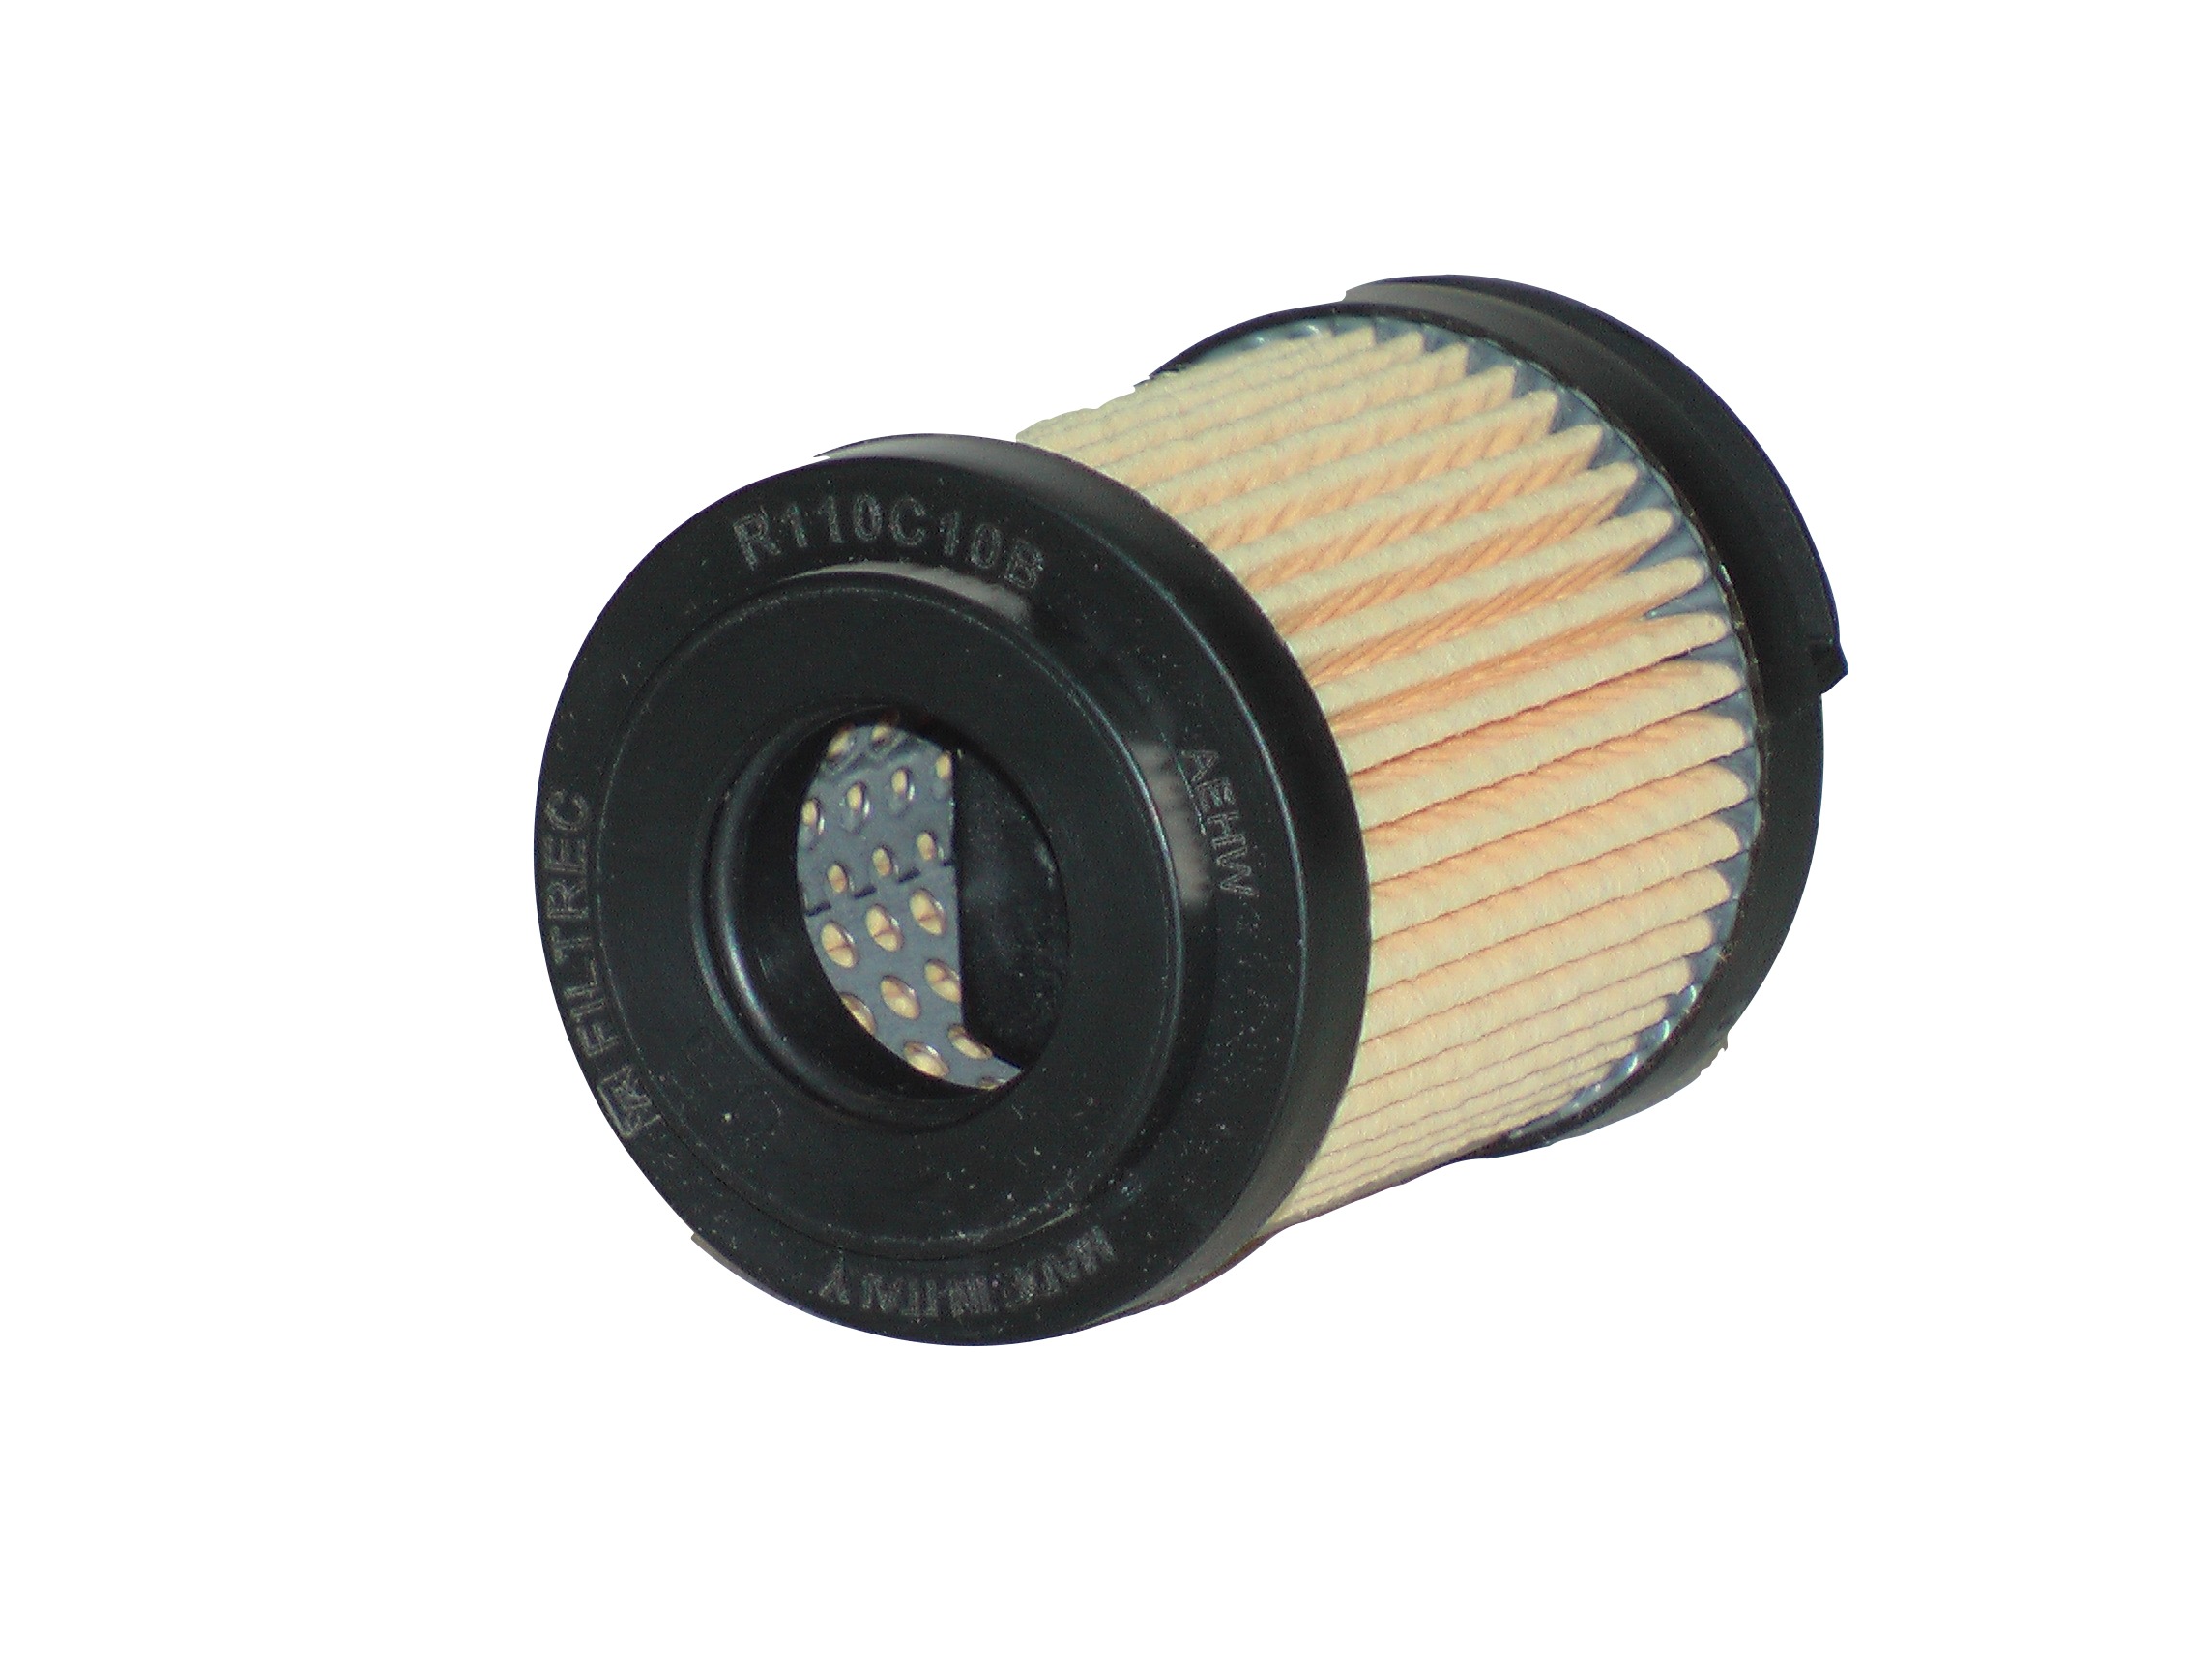 Гидравлический фильтр R110C10B FILTREC. Hydraulic filter